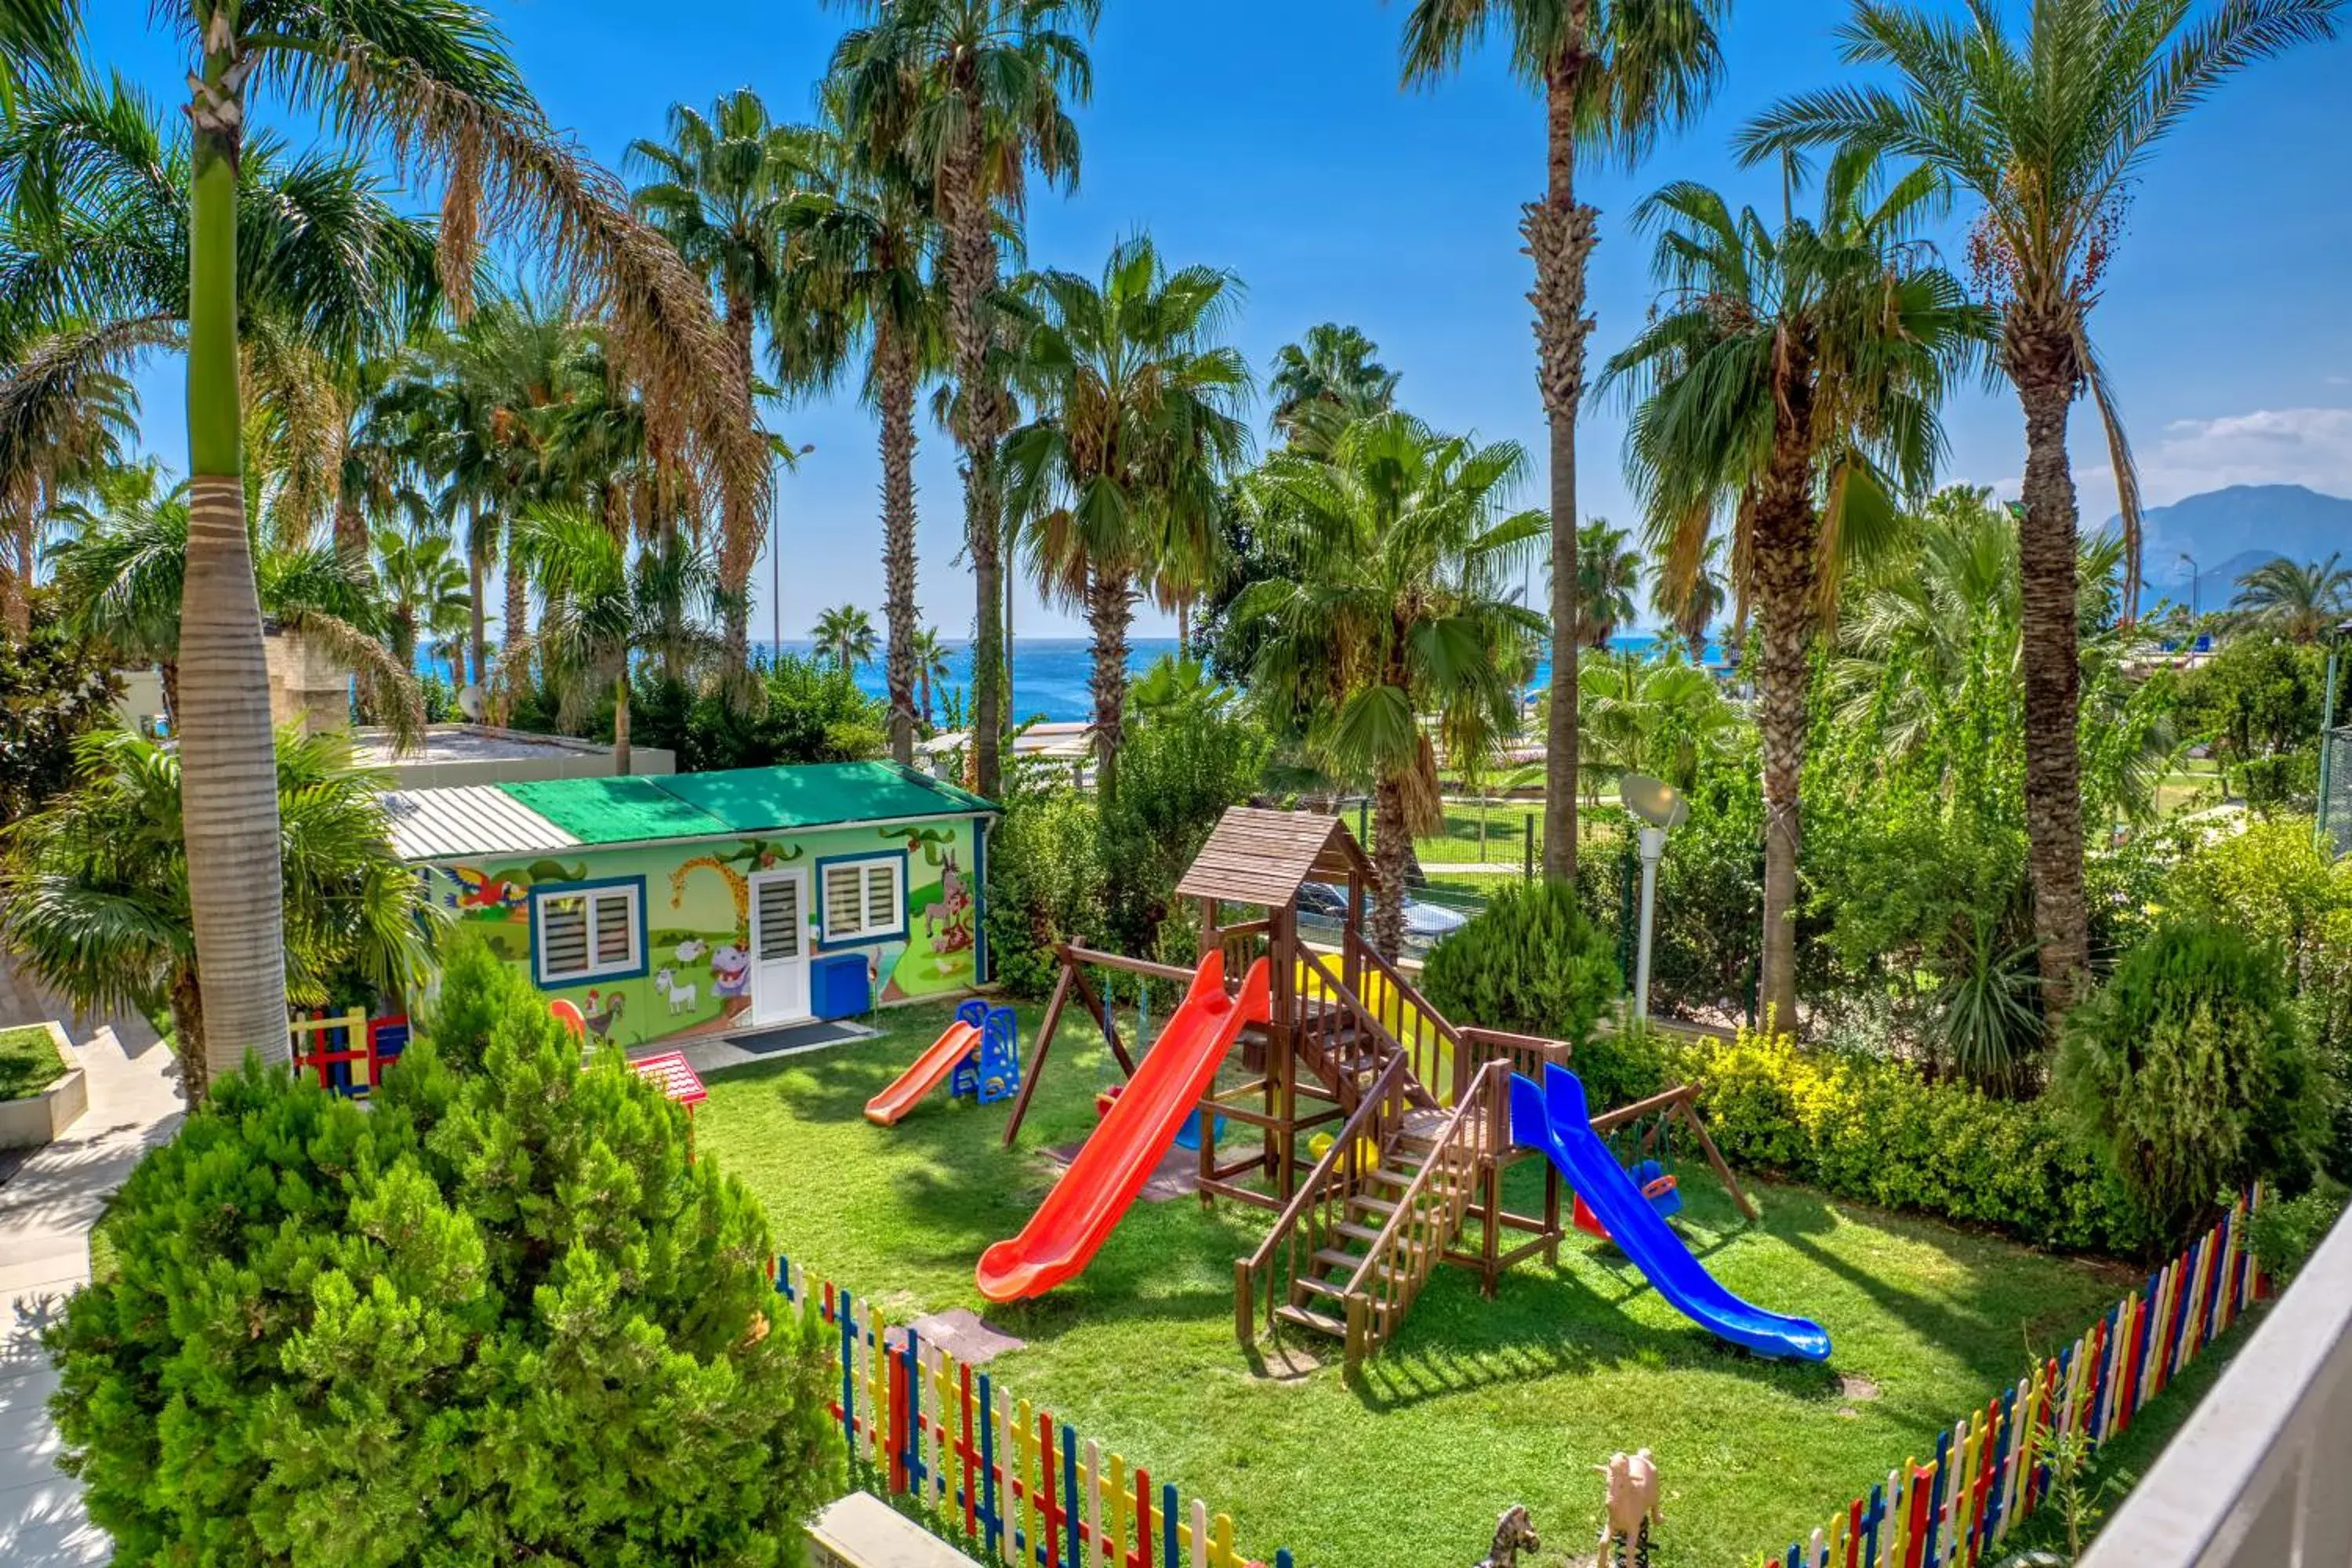 children, Children's Play Area in Porto Bello Hotel Resort & Spa